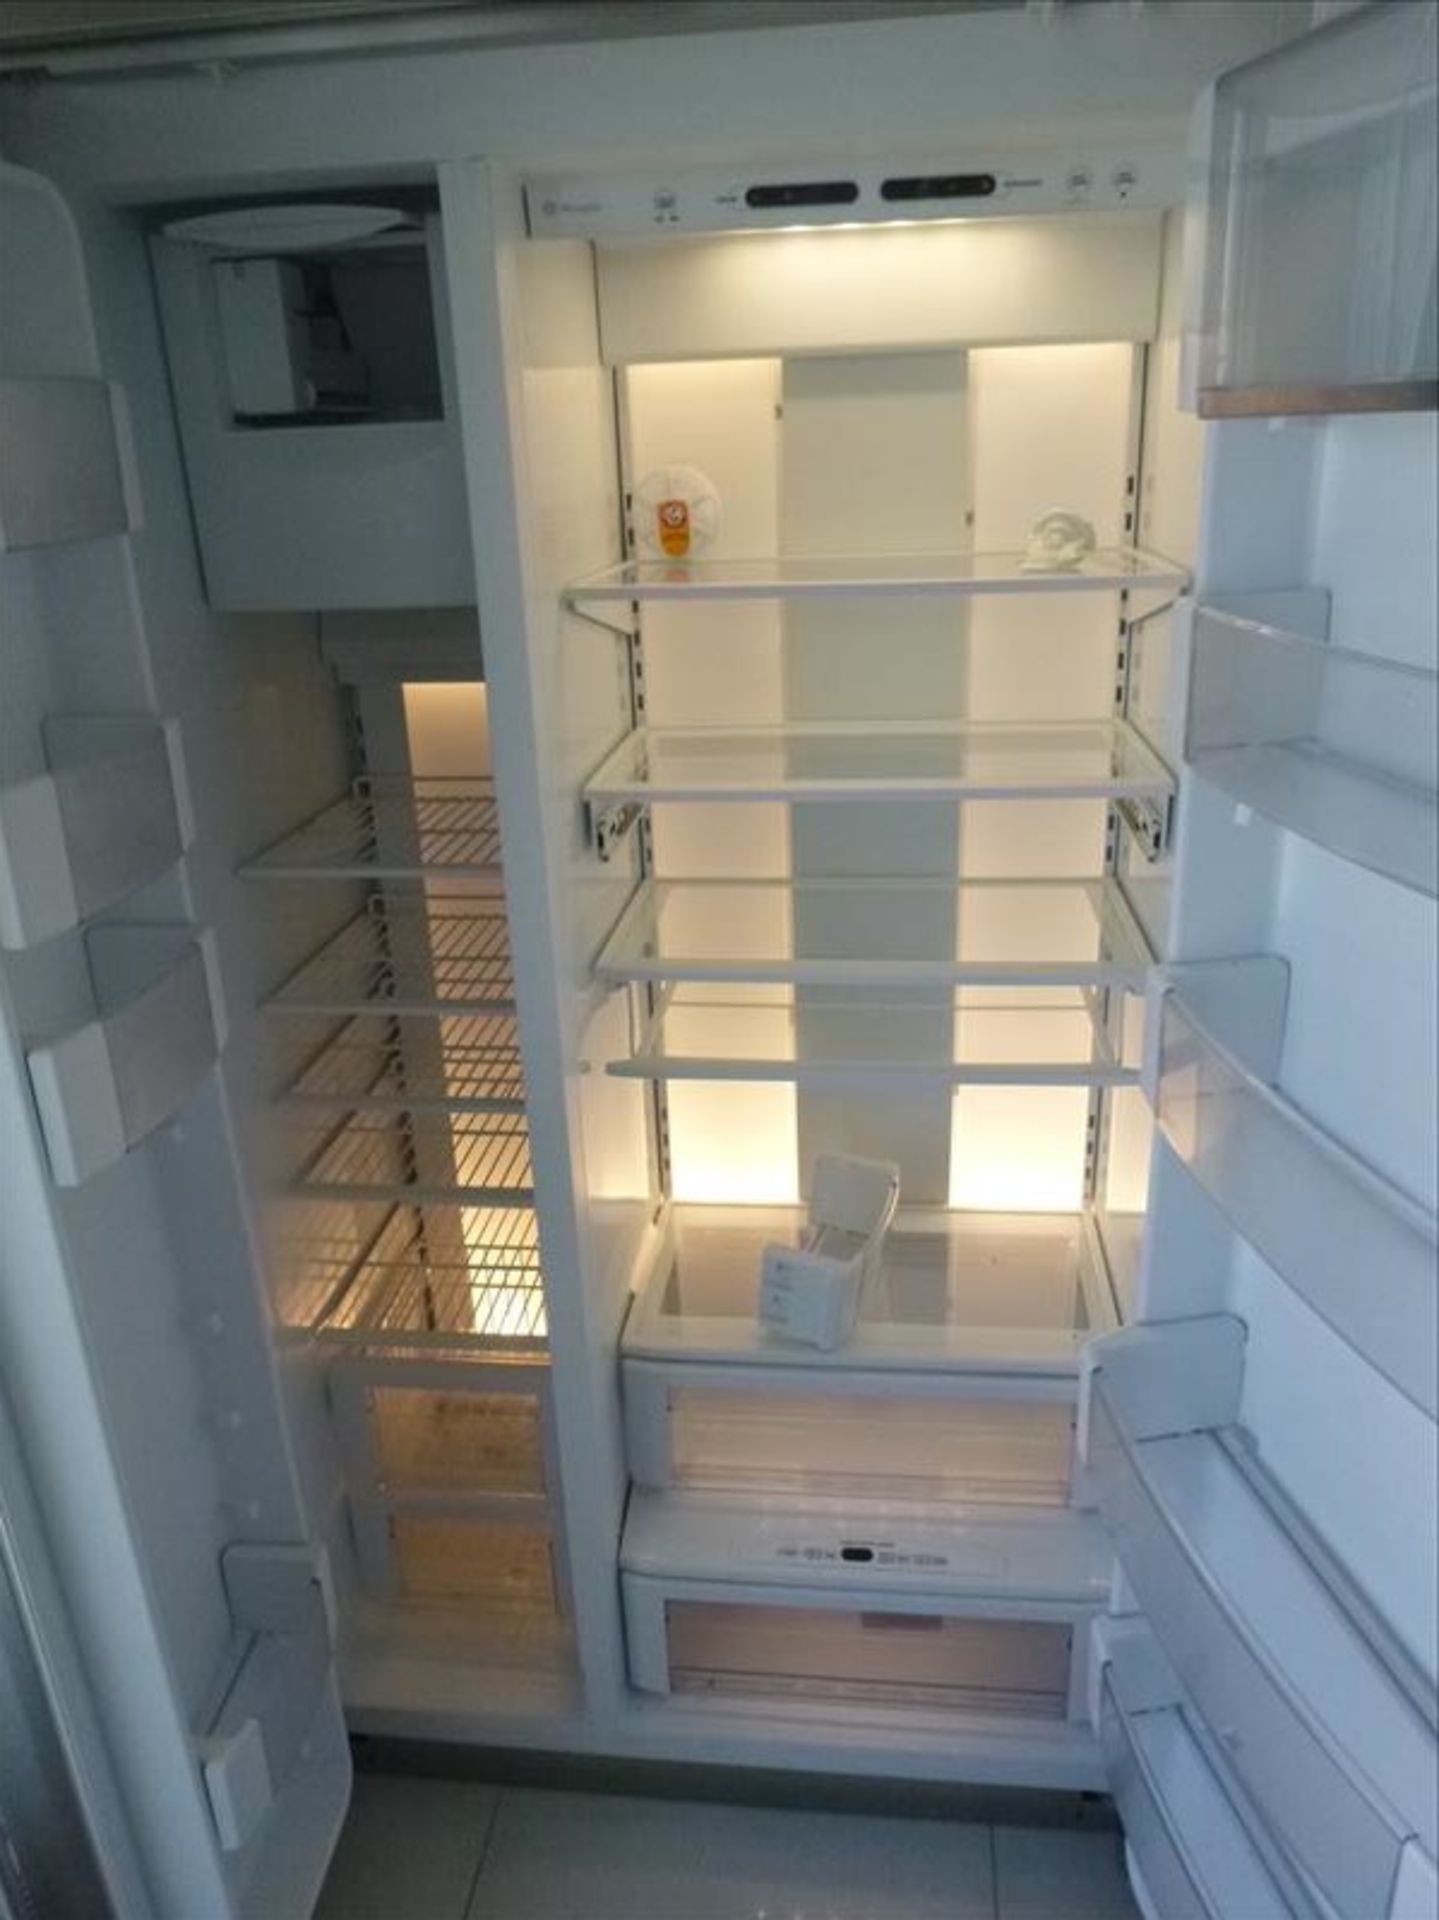 GE Monogram refrigerator, 2-door, s/s [FLR4] - Image 2 of 2